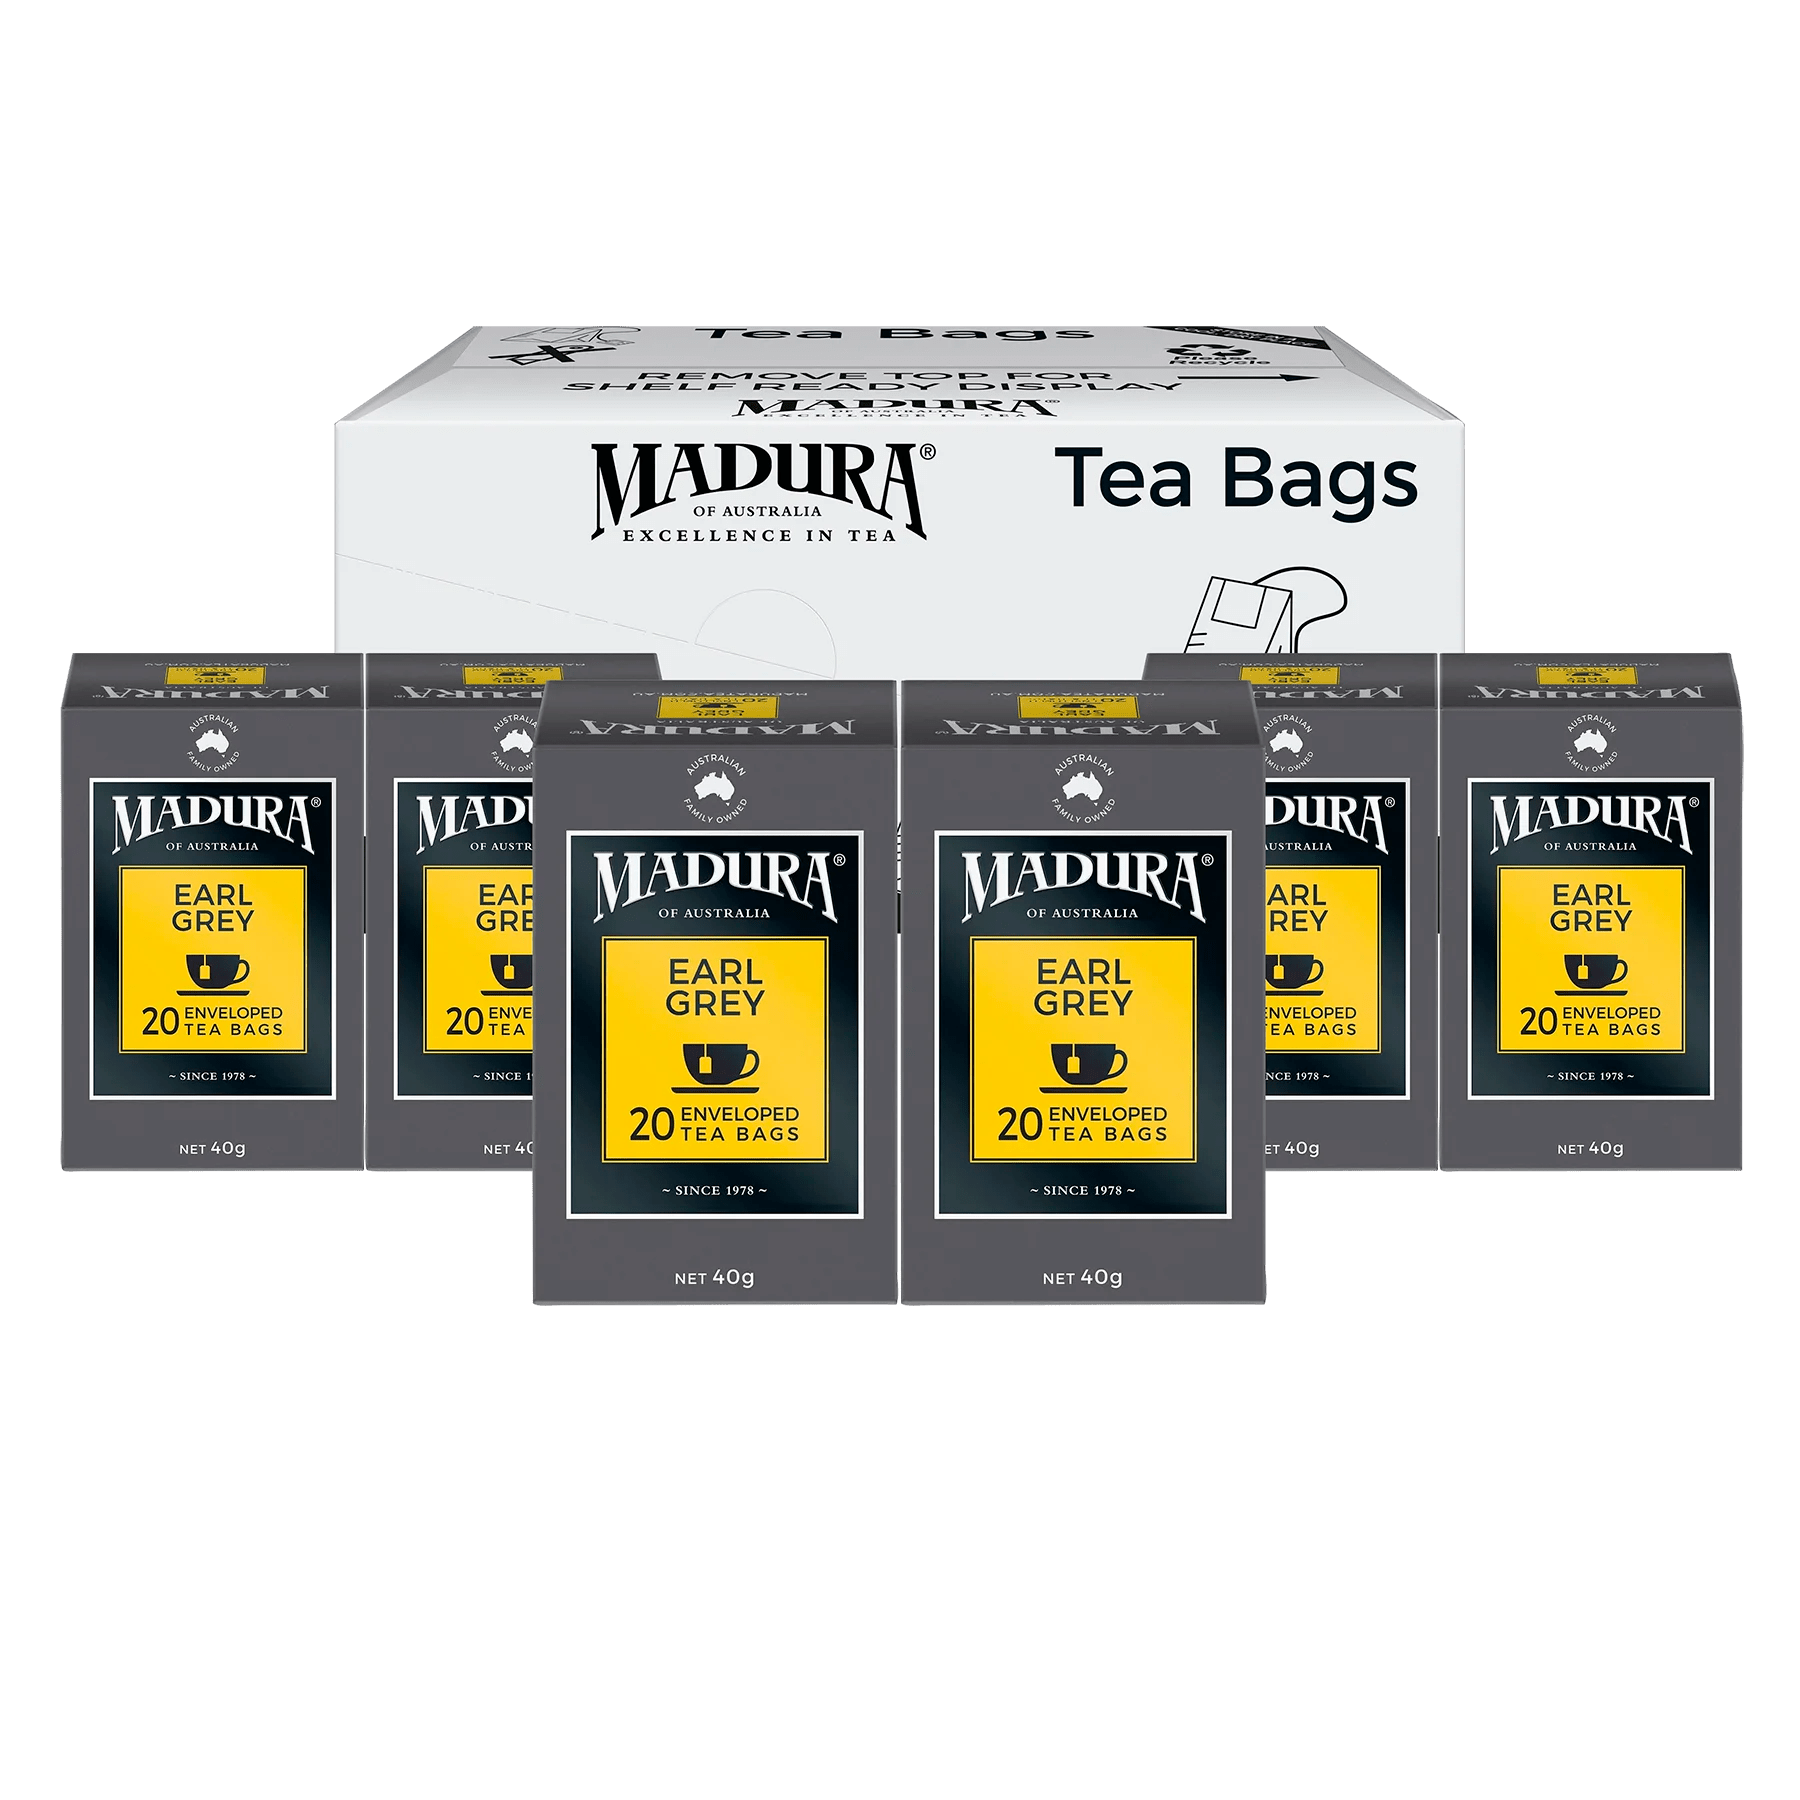 Earl Grey 20 Enveloped Tea Bags - Madura Tea